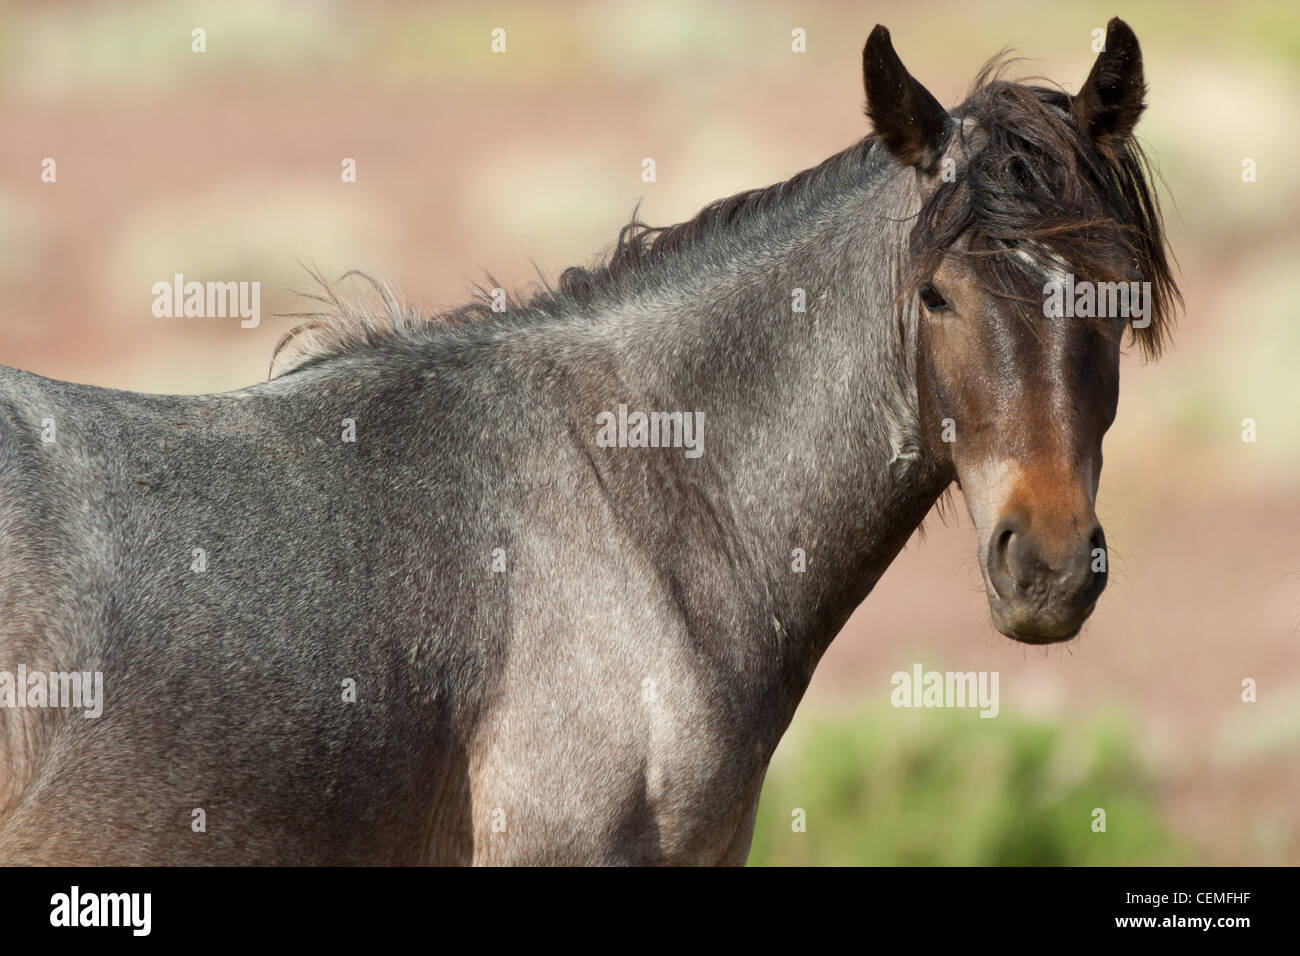 Wild horse: Equus ferus, Nevada Stock Photo